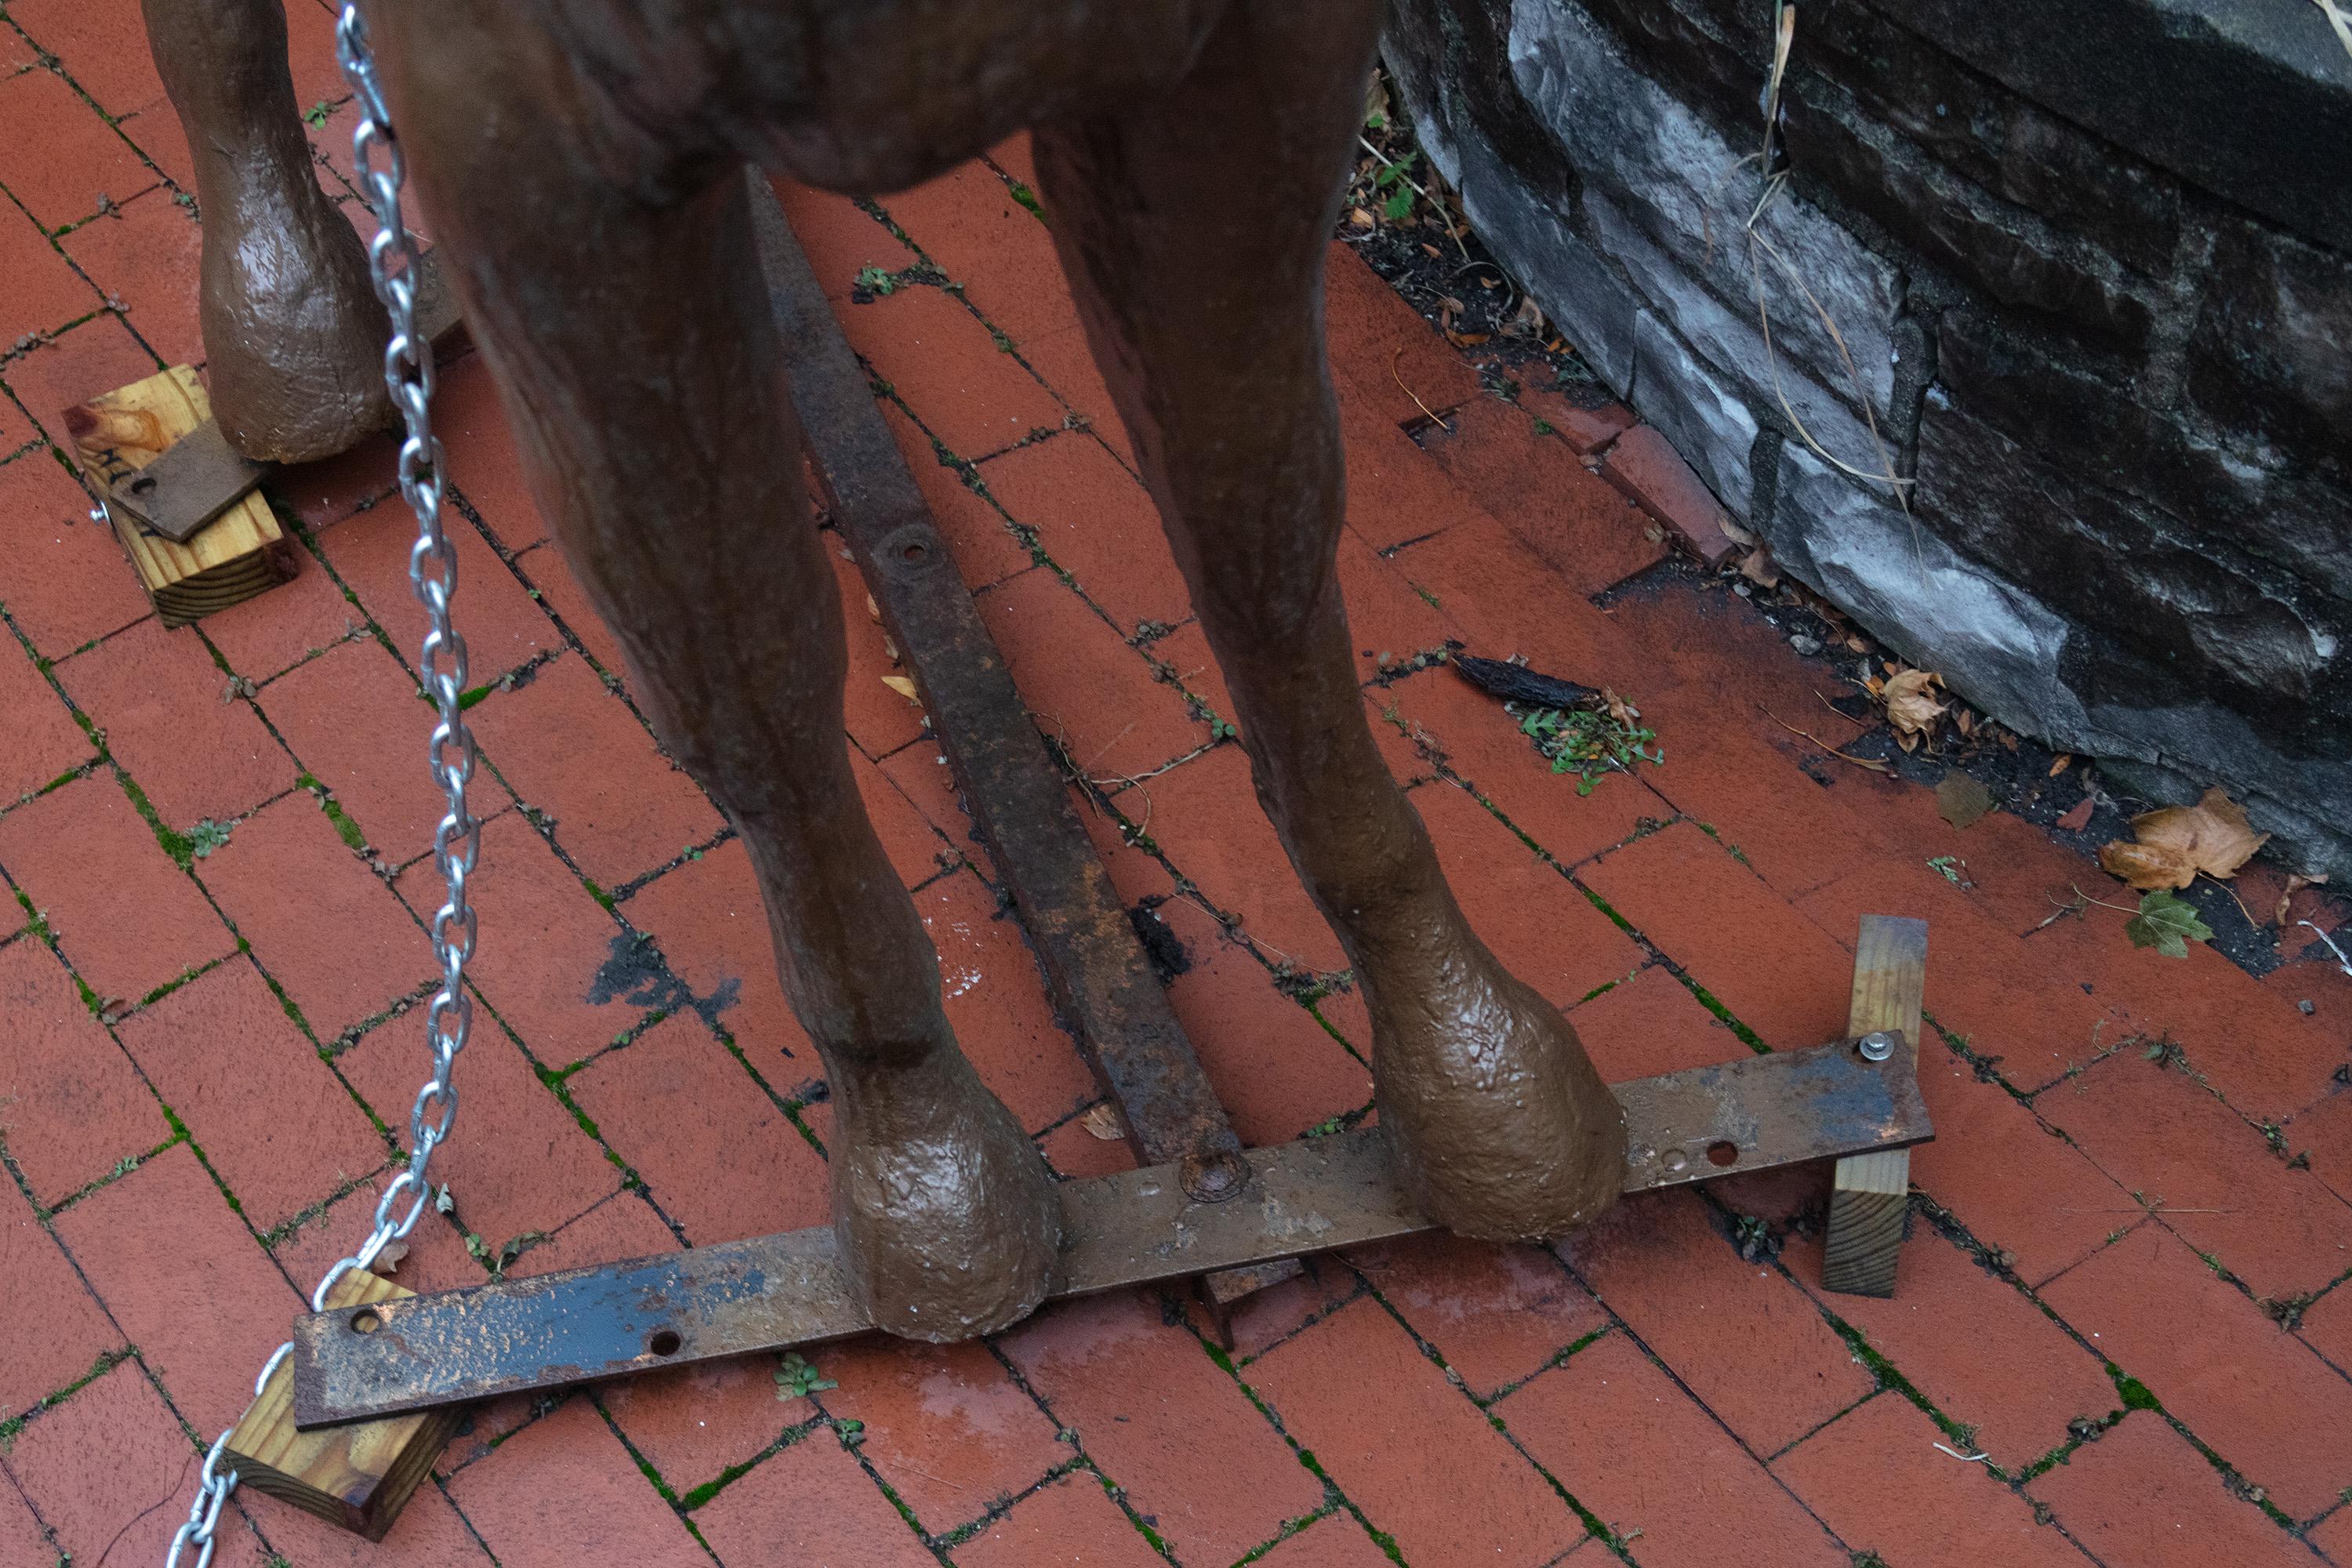 Eine lebensgroße Fiberglasskulptur eines Pferdes. Diese spezielle Pferderasse, der die Skulptur nachempfunden ist, heißt Quarter Horse. Viele Besucher unserer Galerie müssen zweimal hinschauen, wenn sie diese Pferde in unserem Innenhof mitten in der